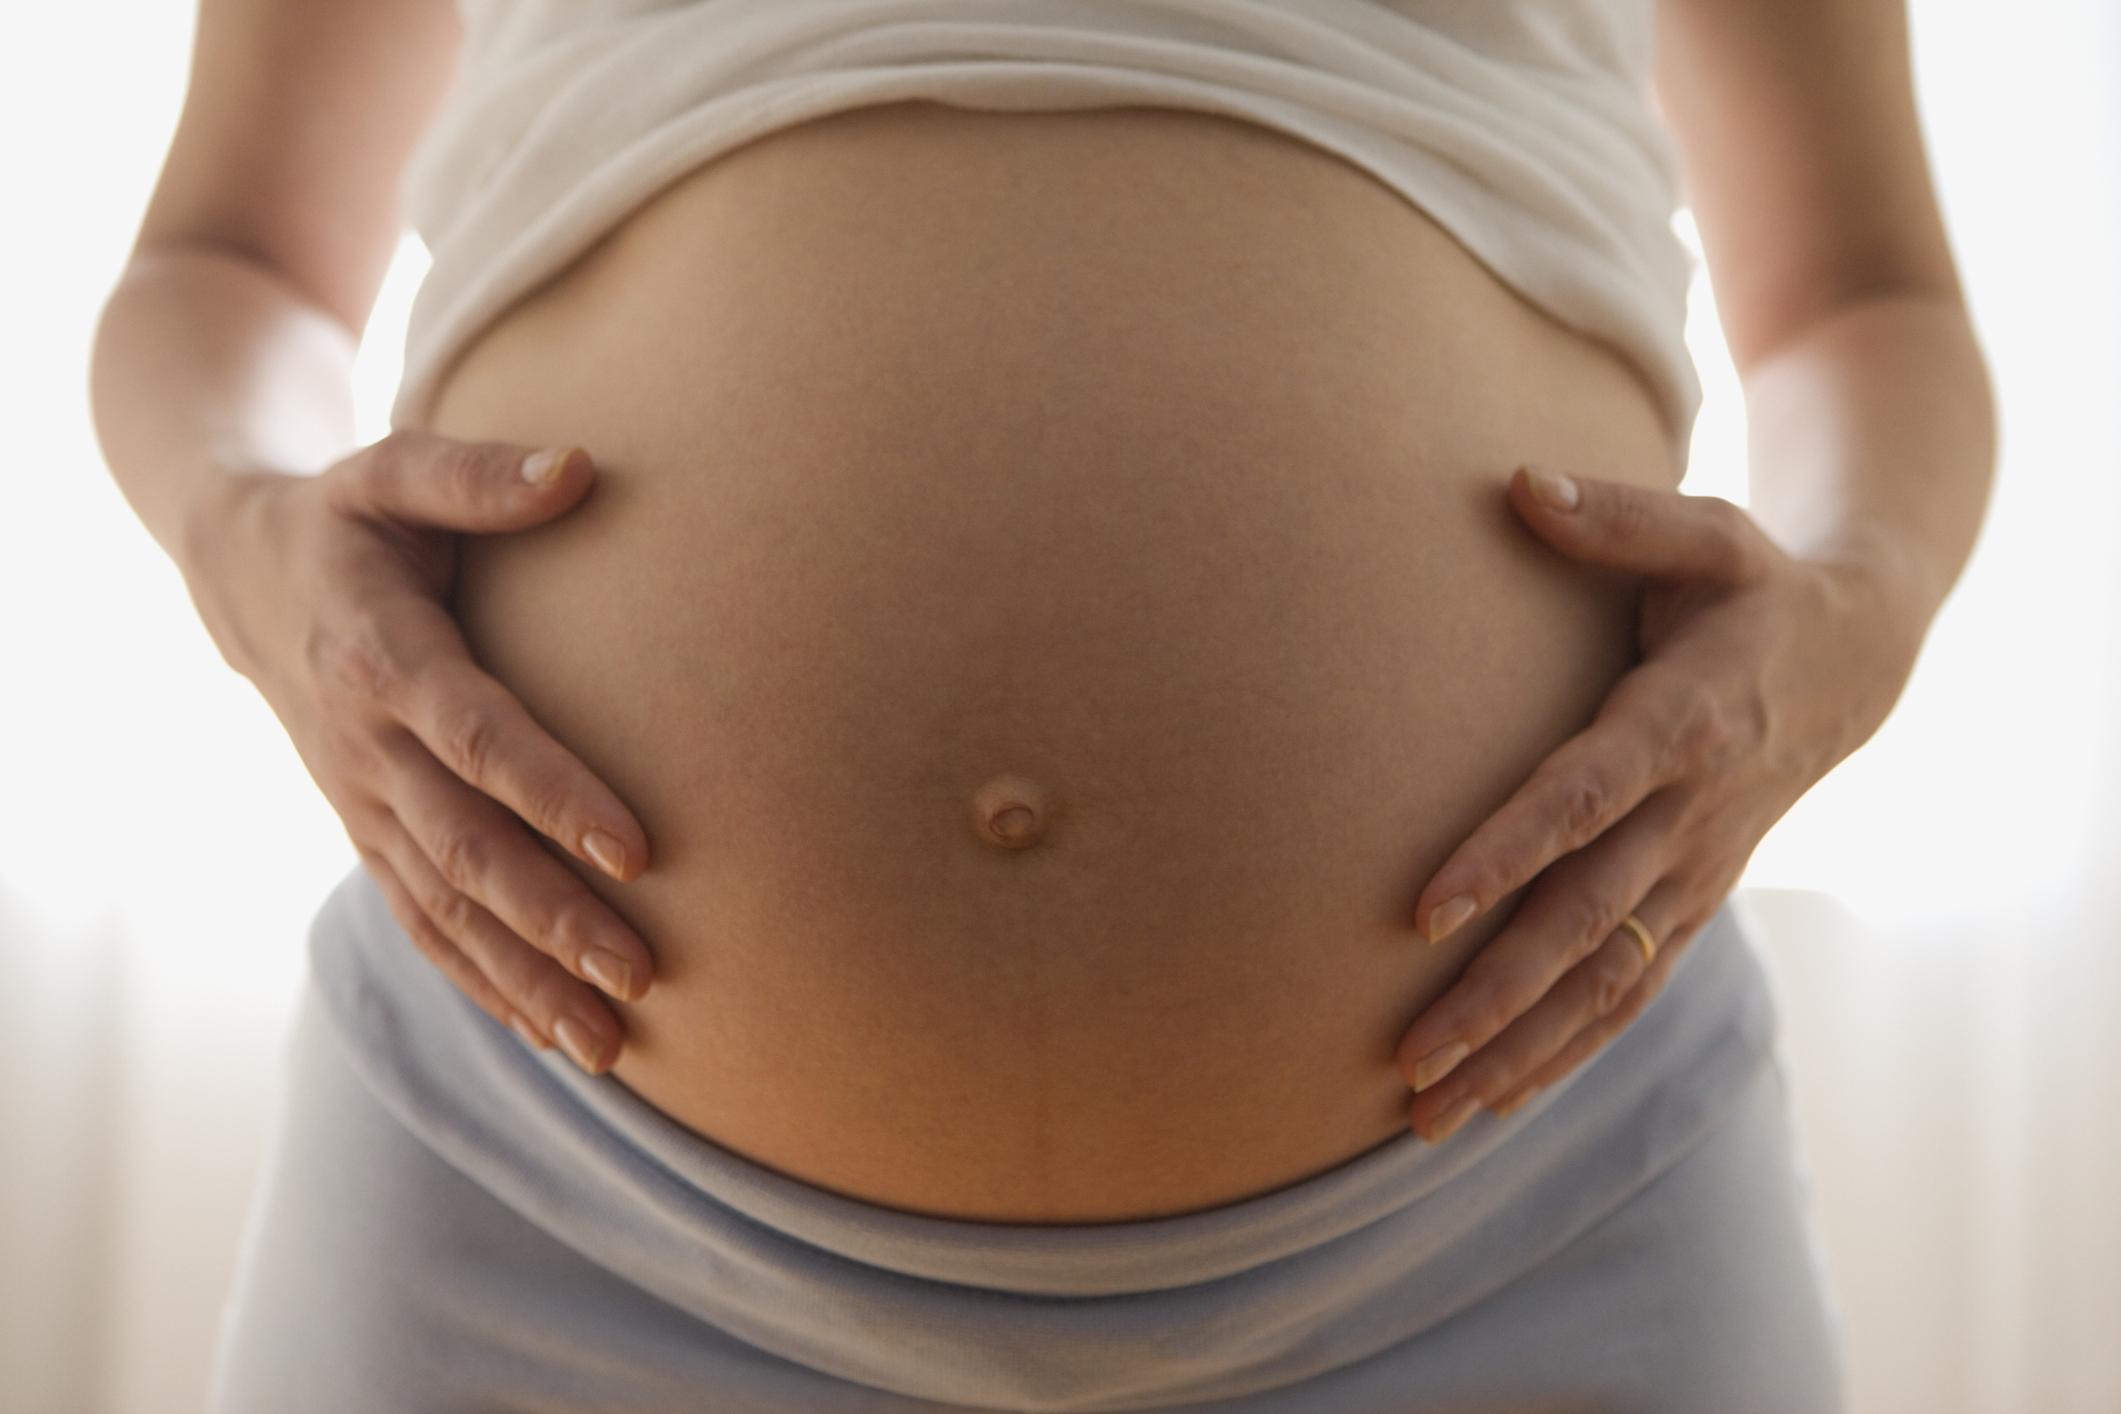 Le ventre dur pendant la grossesse: de quoi s'agit-il? - Femmes d ...